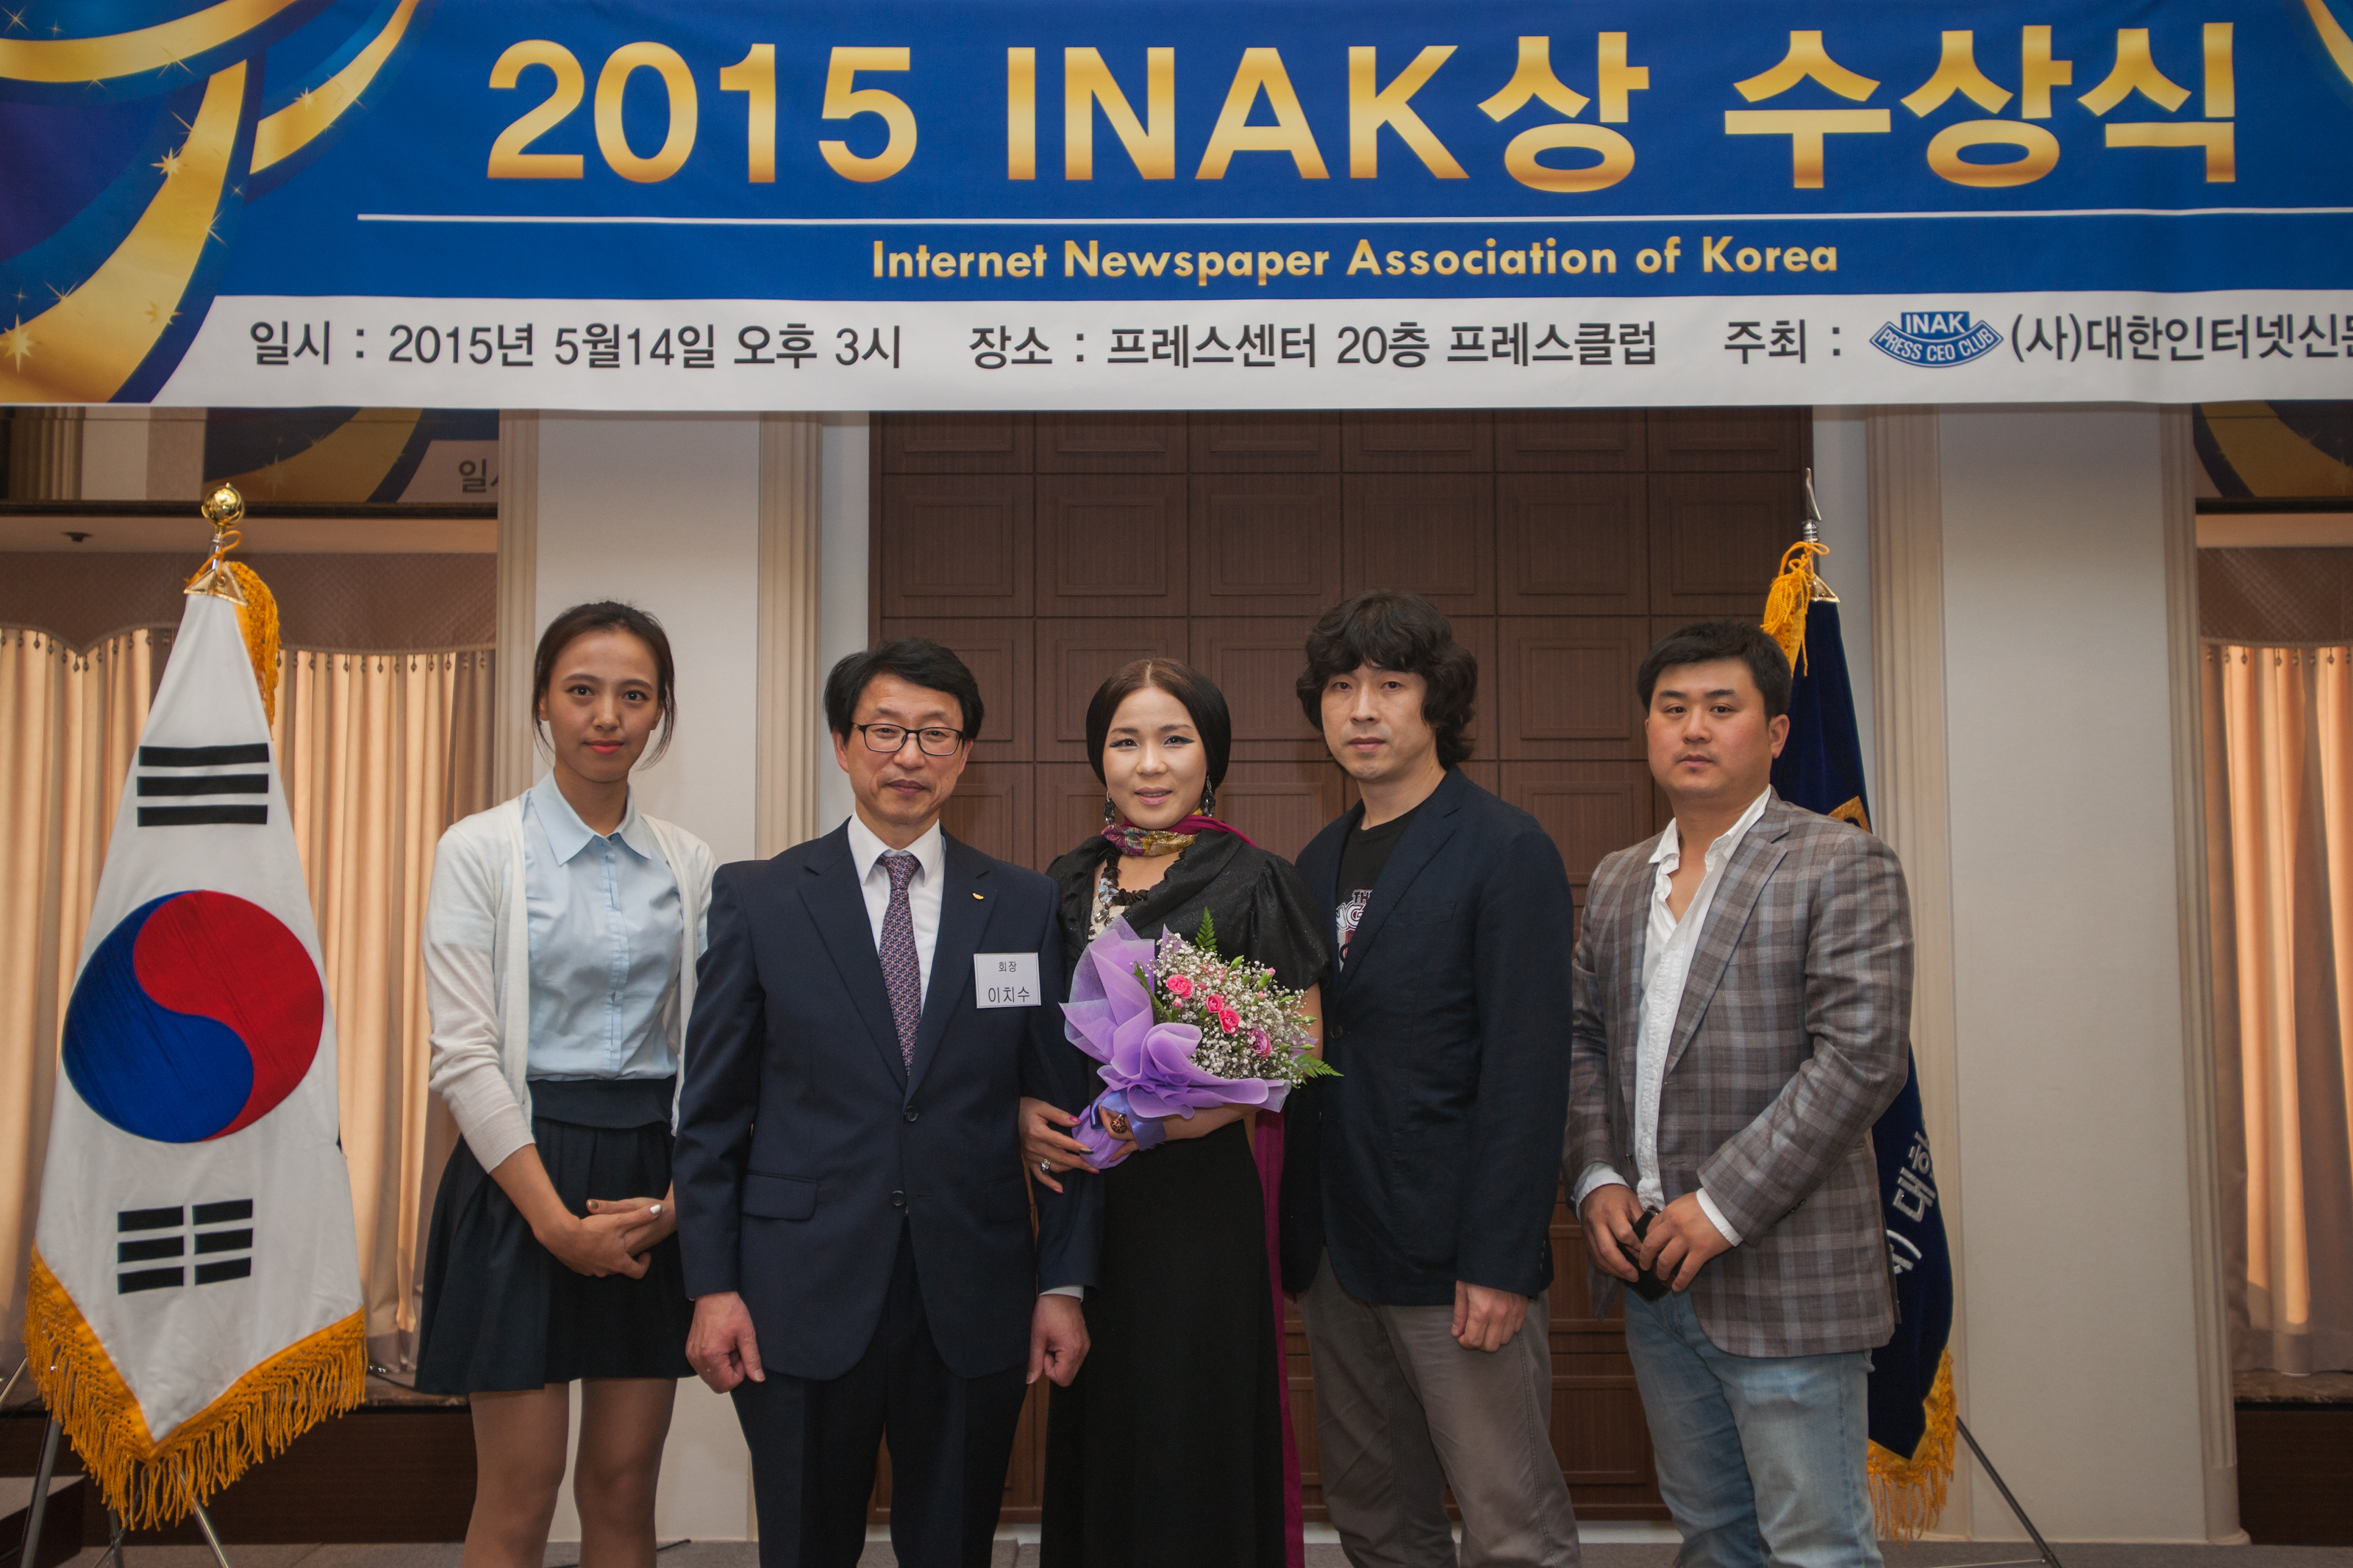 지난 5월 14일 대한인터넷신문협회(회장 이치수)가 수여하는 ‘2015 INAK 창조예술상’을 수상했다. INAK(Internet Newspaper Association of Korea) 창조예술상은 뛰어난 창조정신으로 문화예술의 발전을 위해 노력한 점, 재능 기부 활동을 지속적으로 펼쳐 청소년에게 올바른 가치관을 심어주는 등 그동안의 활동에 대한 공로를 인정해 준 상이다.